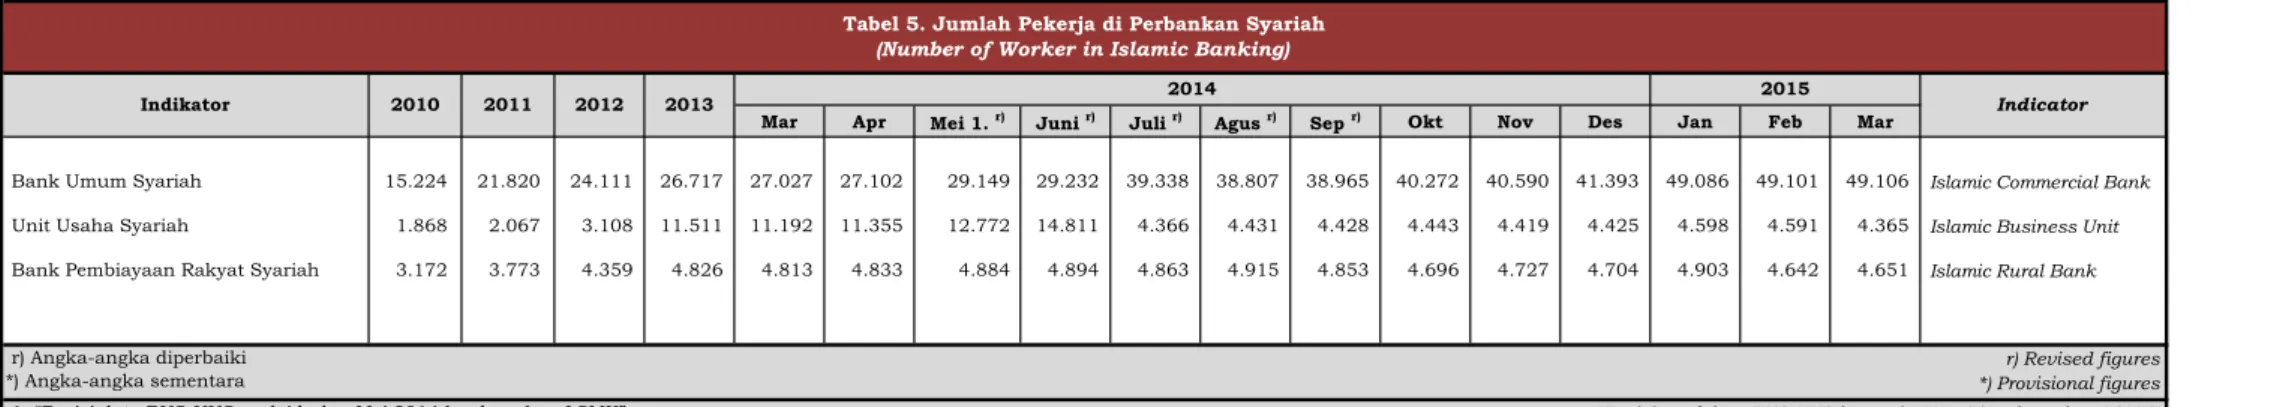 Tabel 5. Jumlah Pekerja di Perbankan Syariah  (Number of Worker in Islamic Banking)